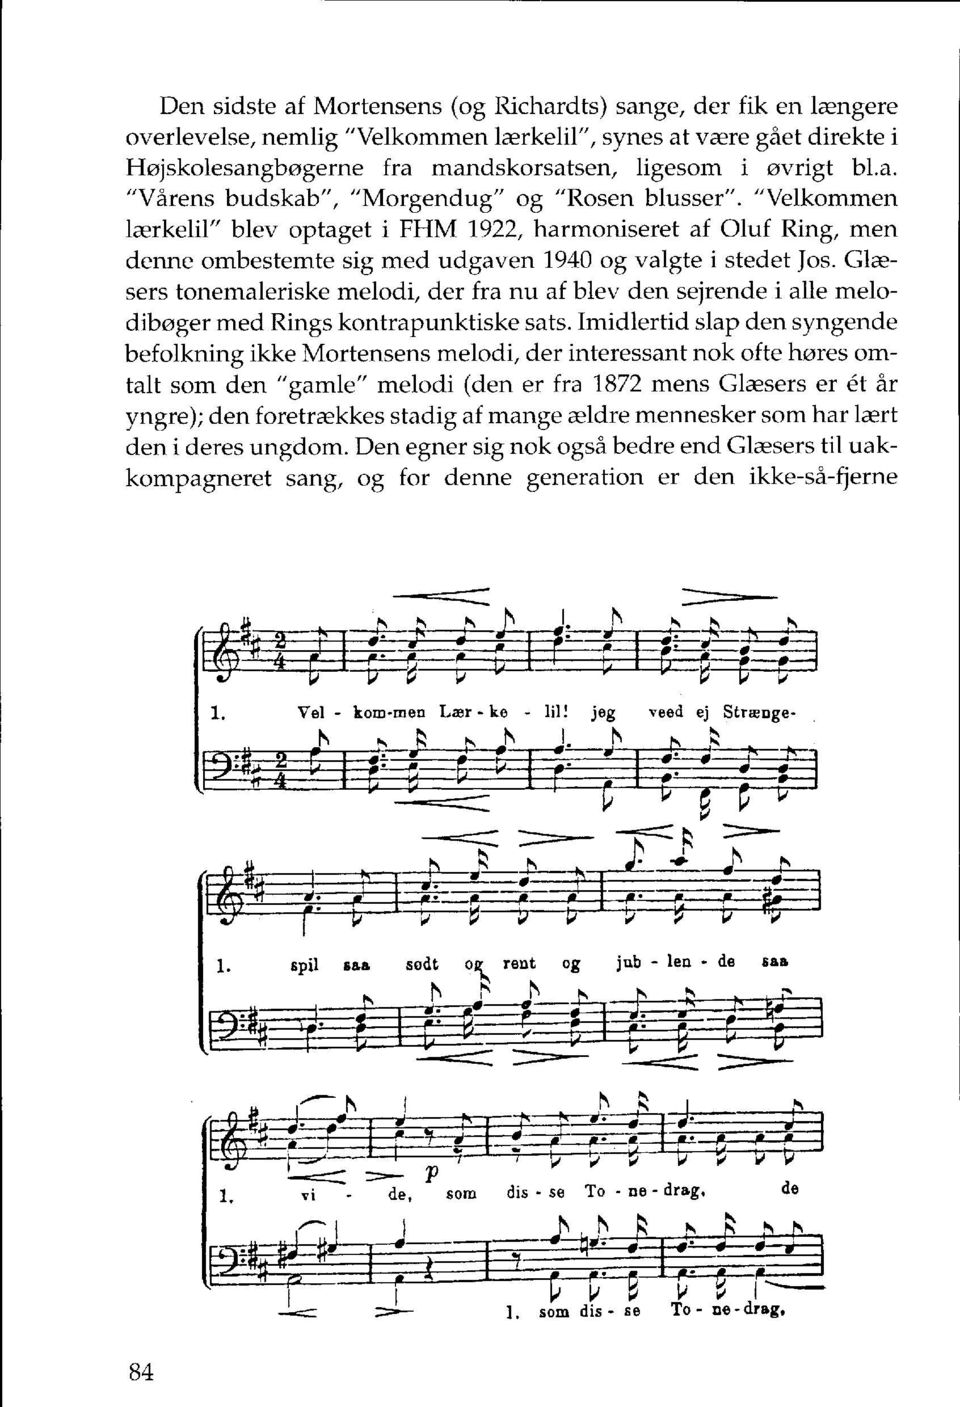 Glæsers tonemaleriske melodi, der fra nu af blev den sejrende i alle melodibøger med Rings kontrapunktiske sats.